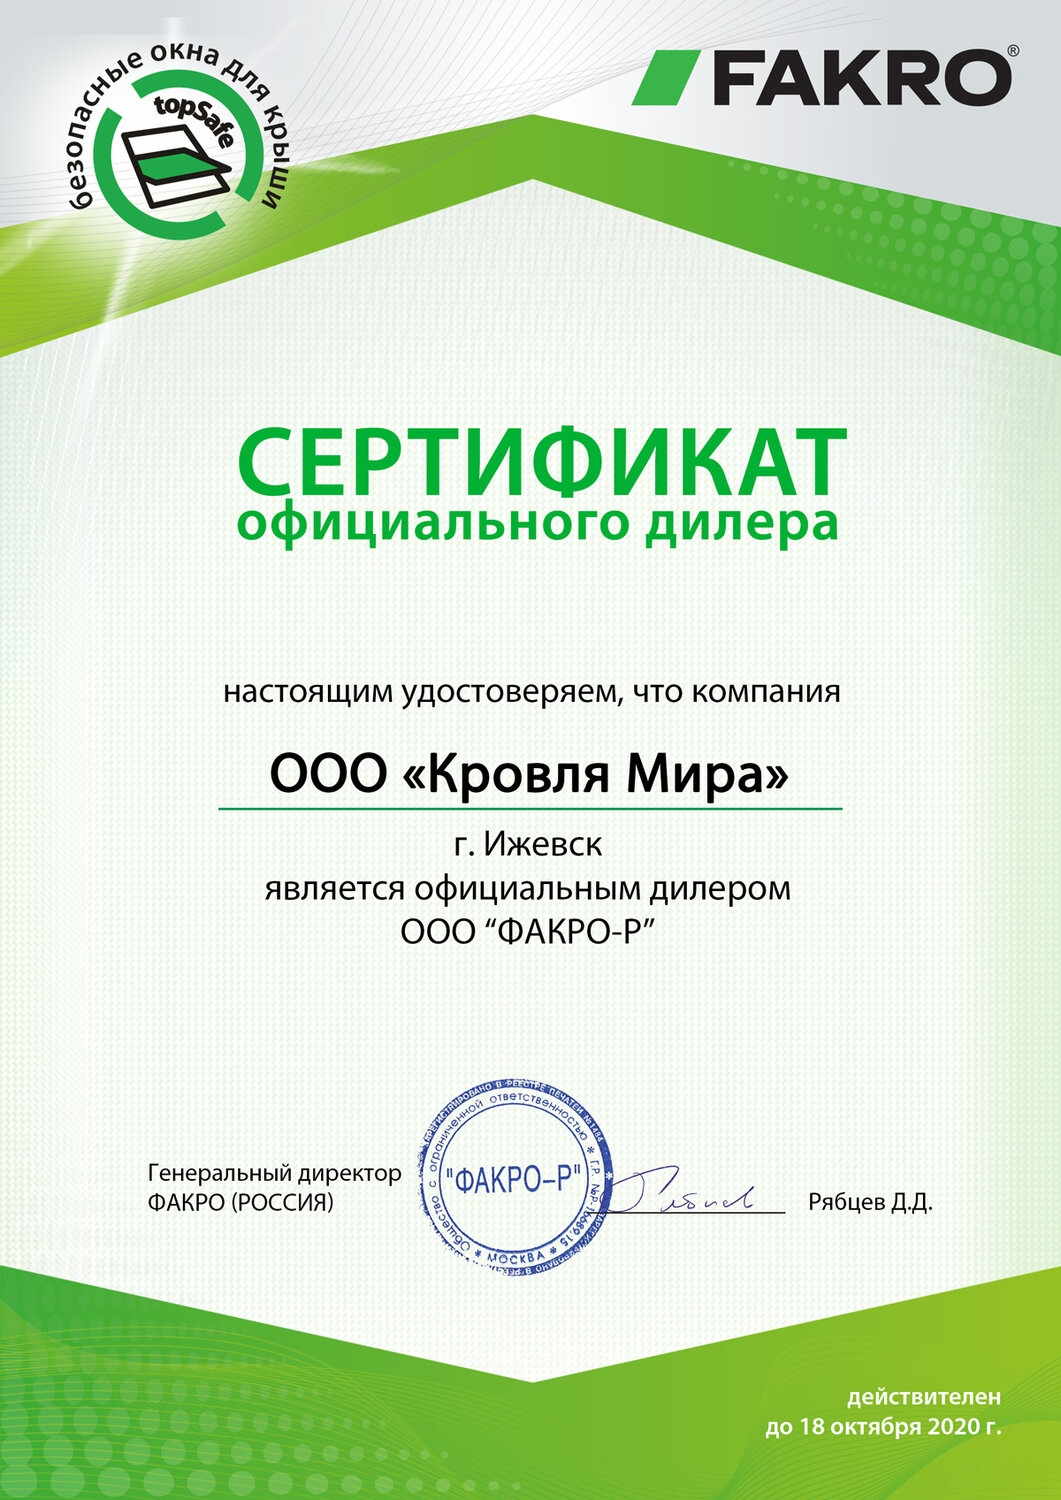 Сертификат официального дилера FAKRO